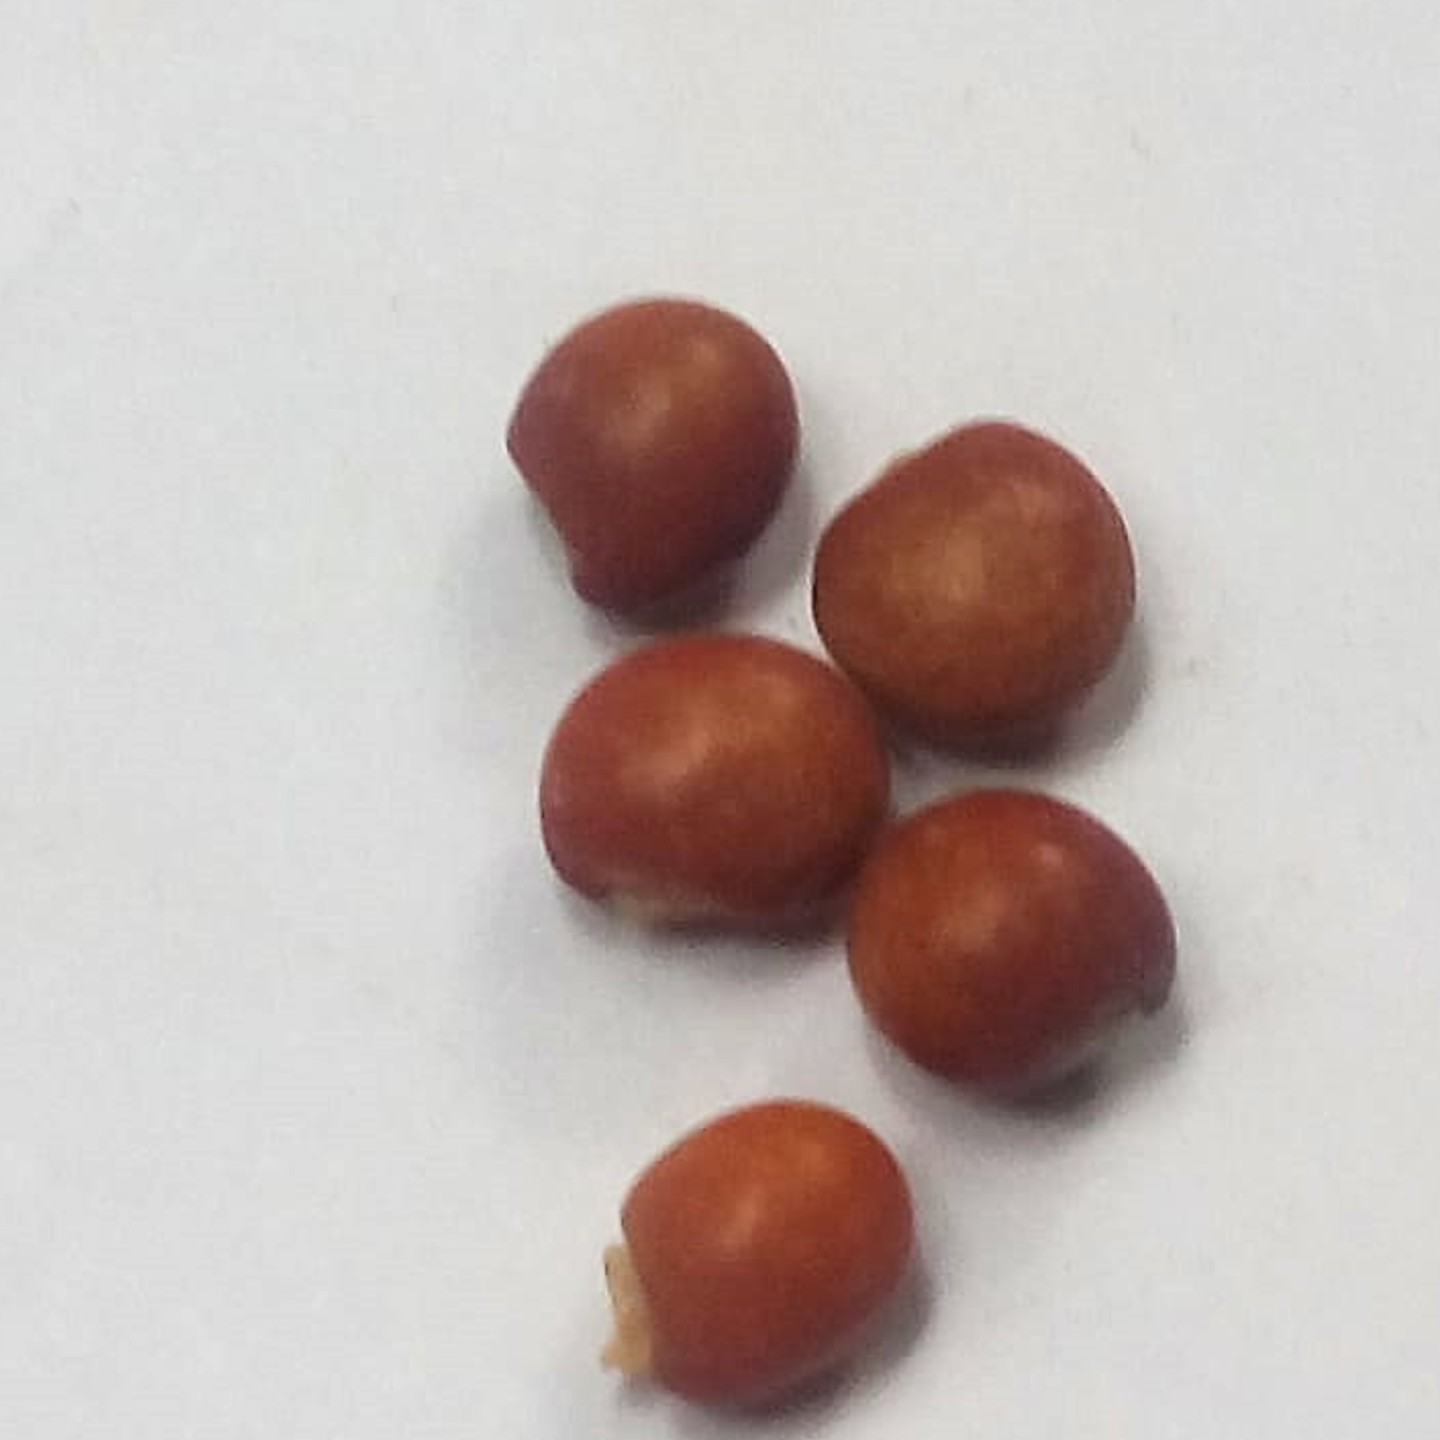 MyHobbyGarden-Veg-Seed- Toor Tur Pigeon Pea Arhar Seeds-Dal Variety-4 seeds